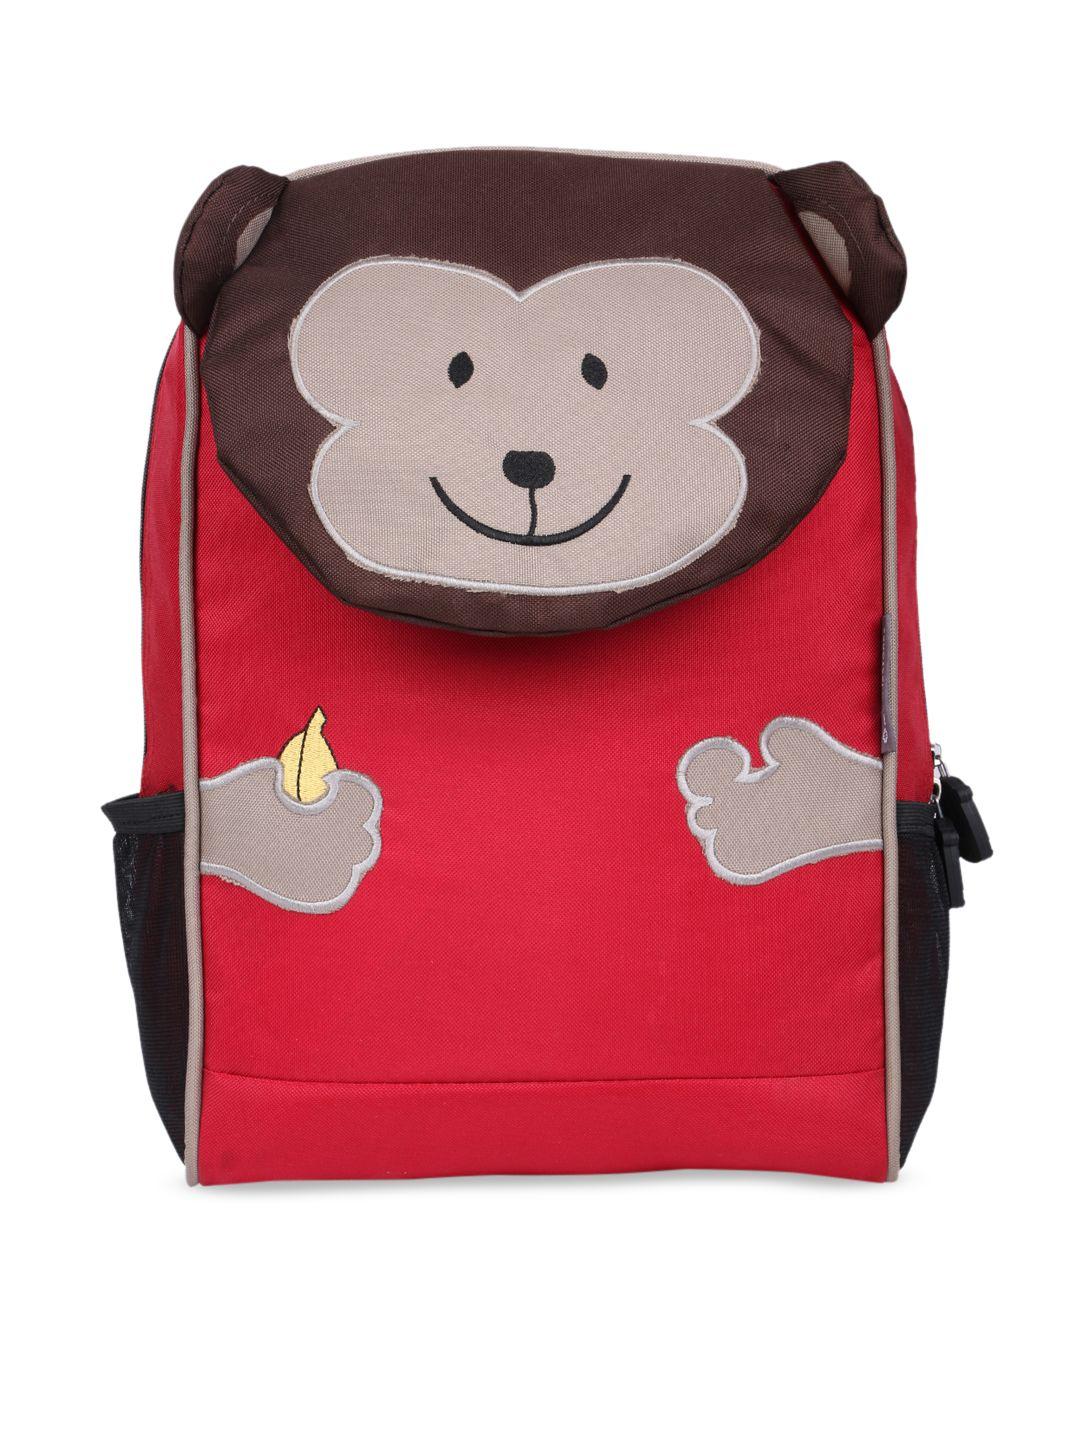 my milestones kids red & brown colourblocked backpack